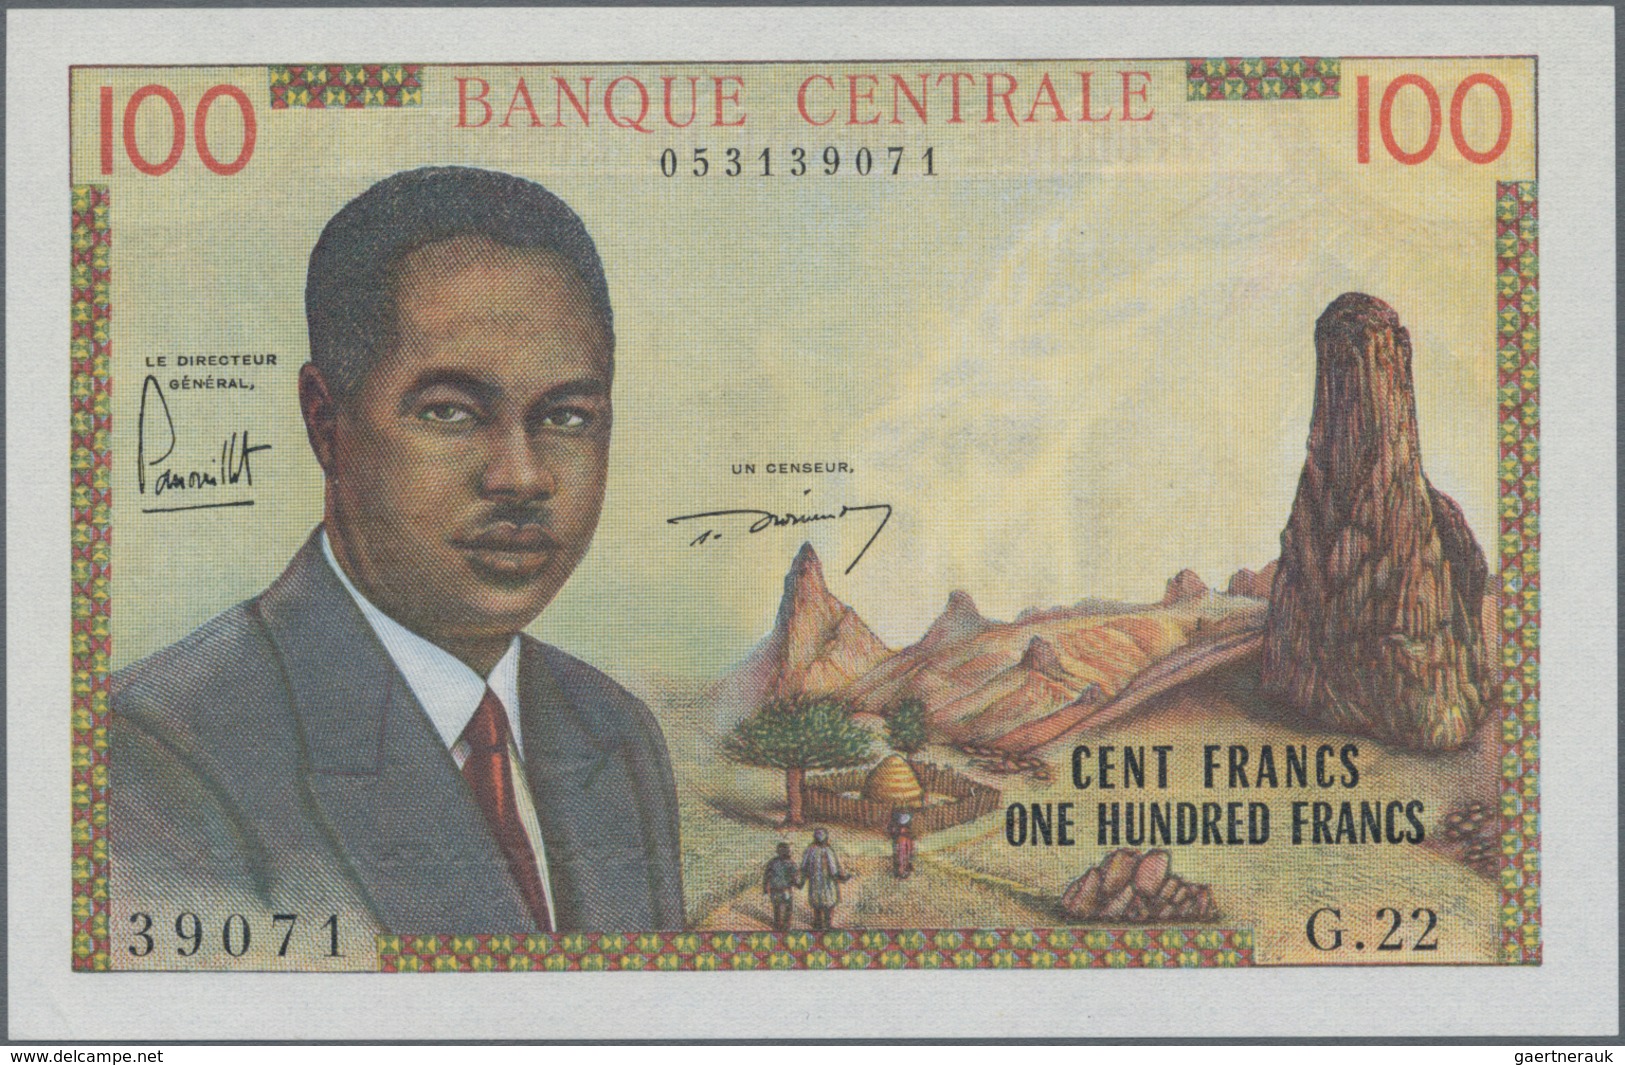 Cameroon / Kamerun: Banque Centrale - République Fédérale Du Cameroun 100 Francs ND(1962), P.10, Tin - Cameroon